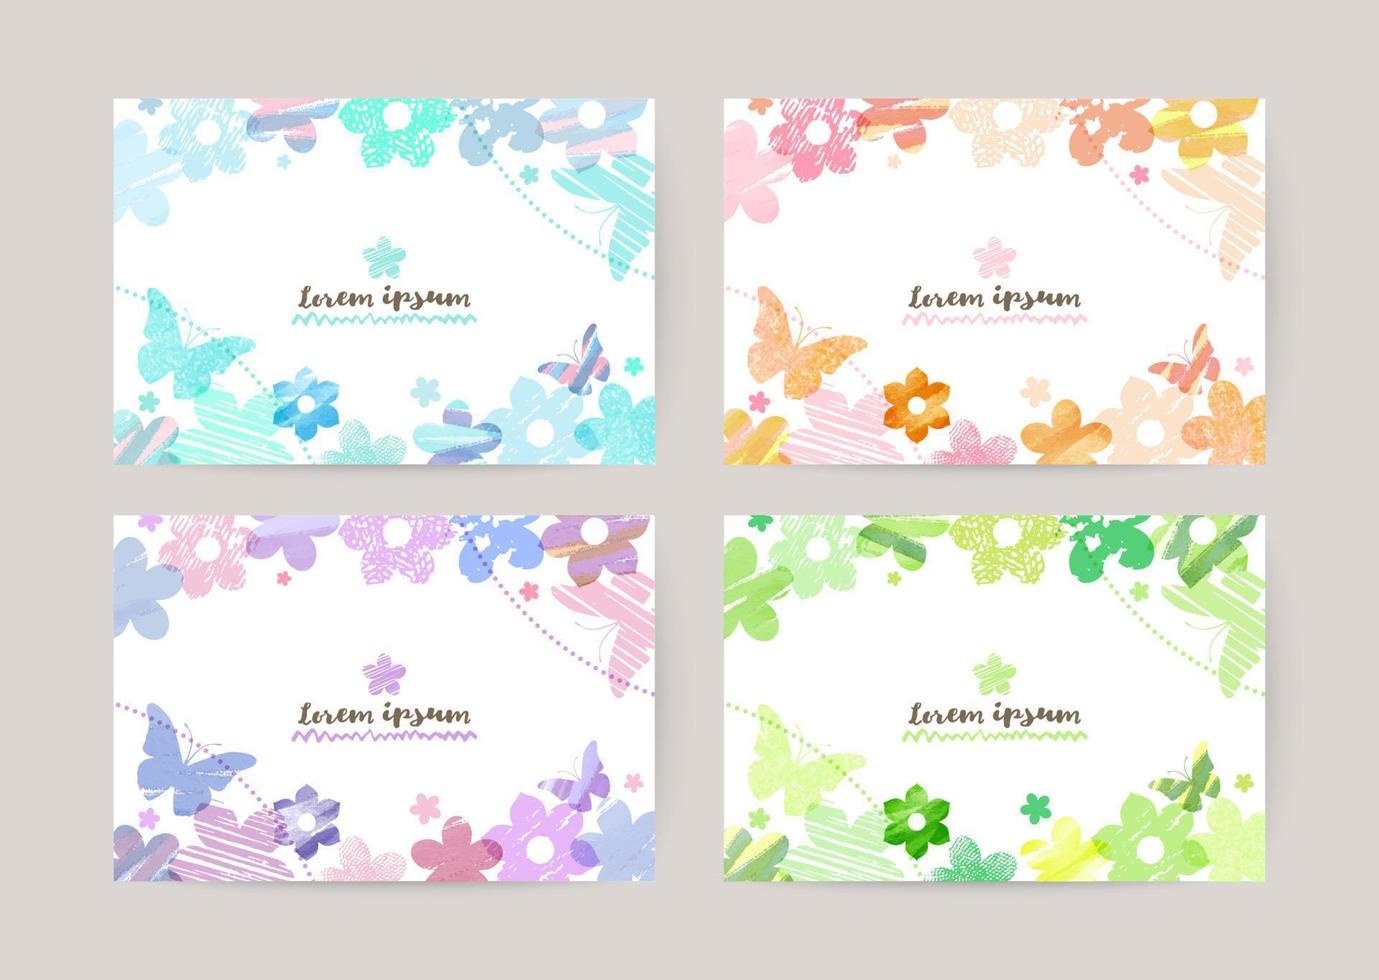 modelo de design de cartão vetorial com flores coloridas e borboletas, decoração em aquarela no conjunto de fundo branco vetor